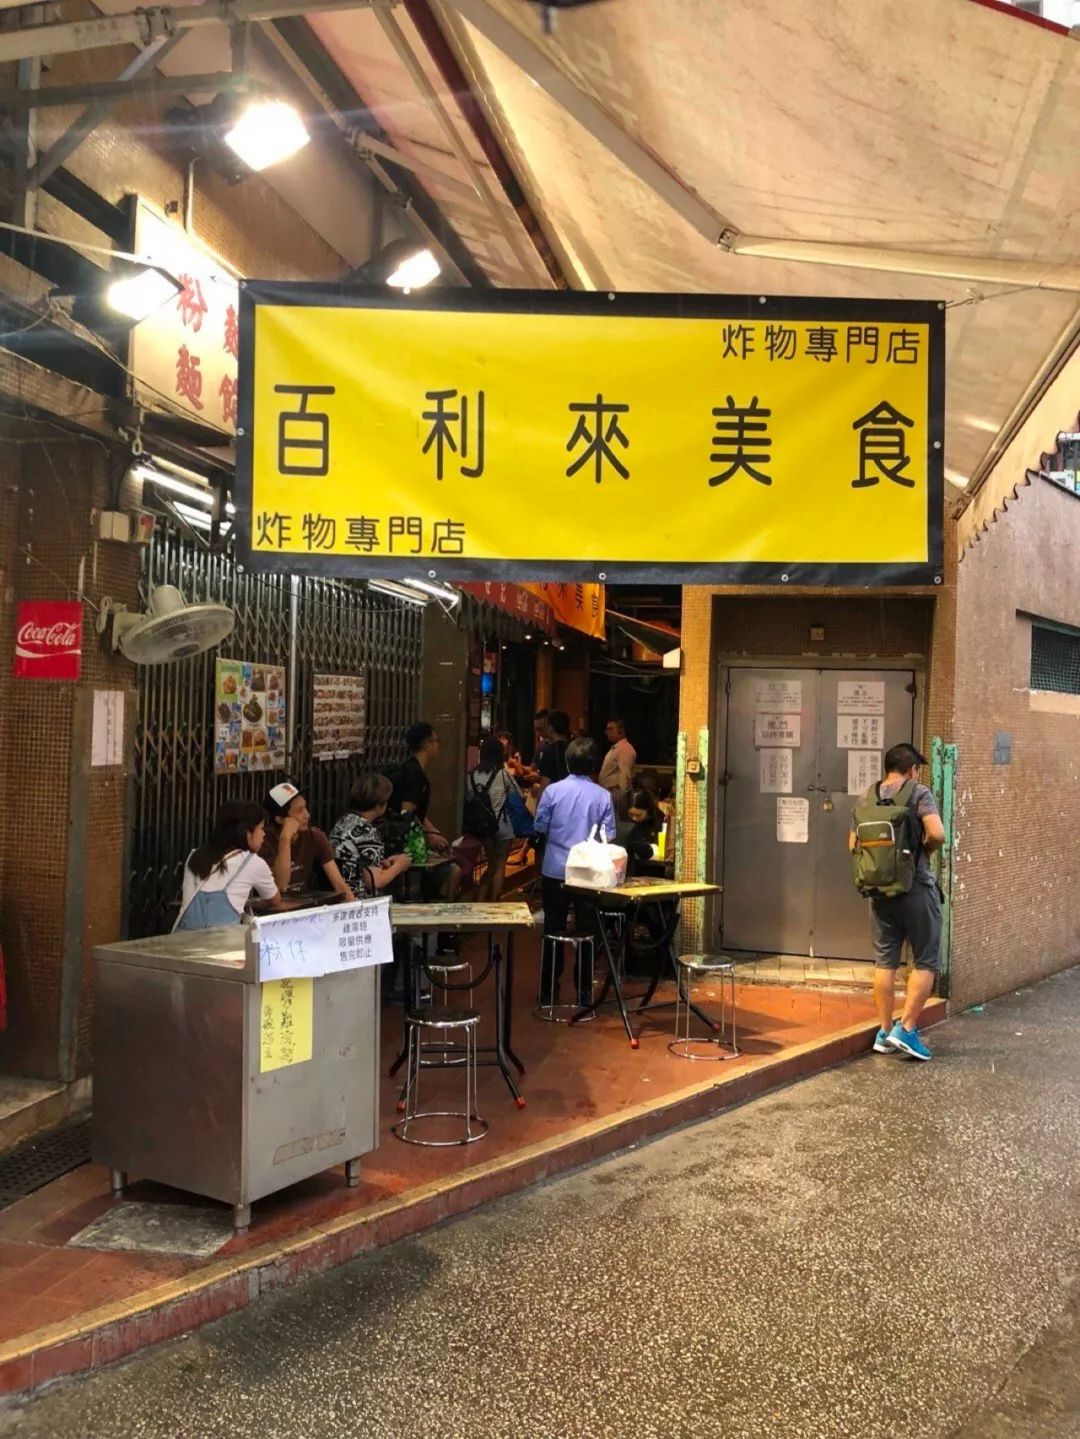 香港街市觅食秘笈:隐于市井中的 11 间神级美食